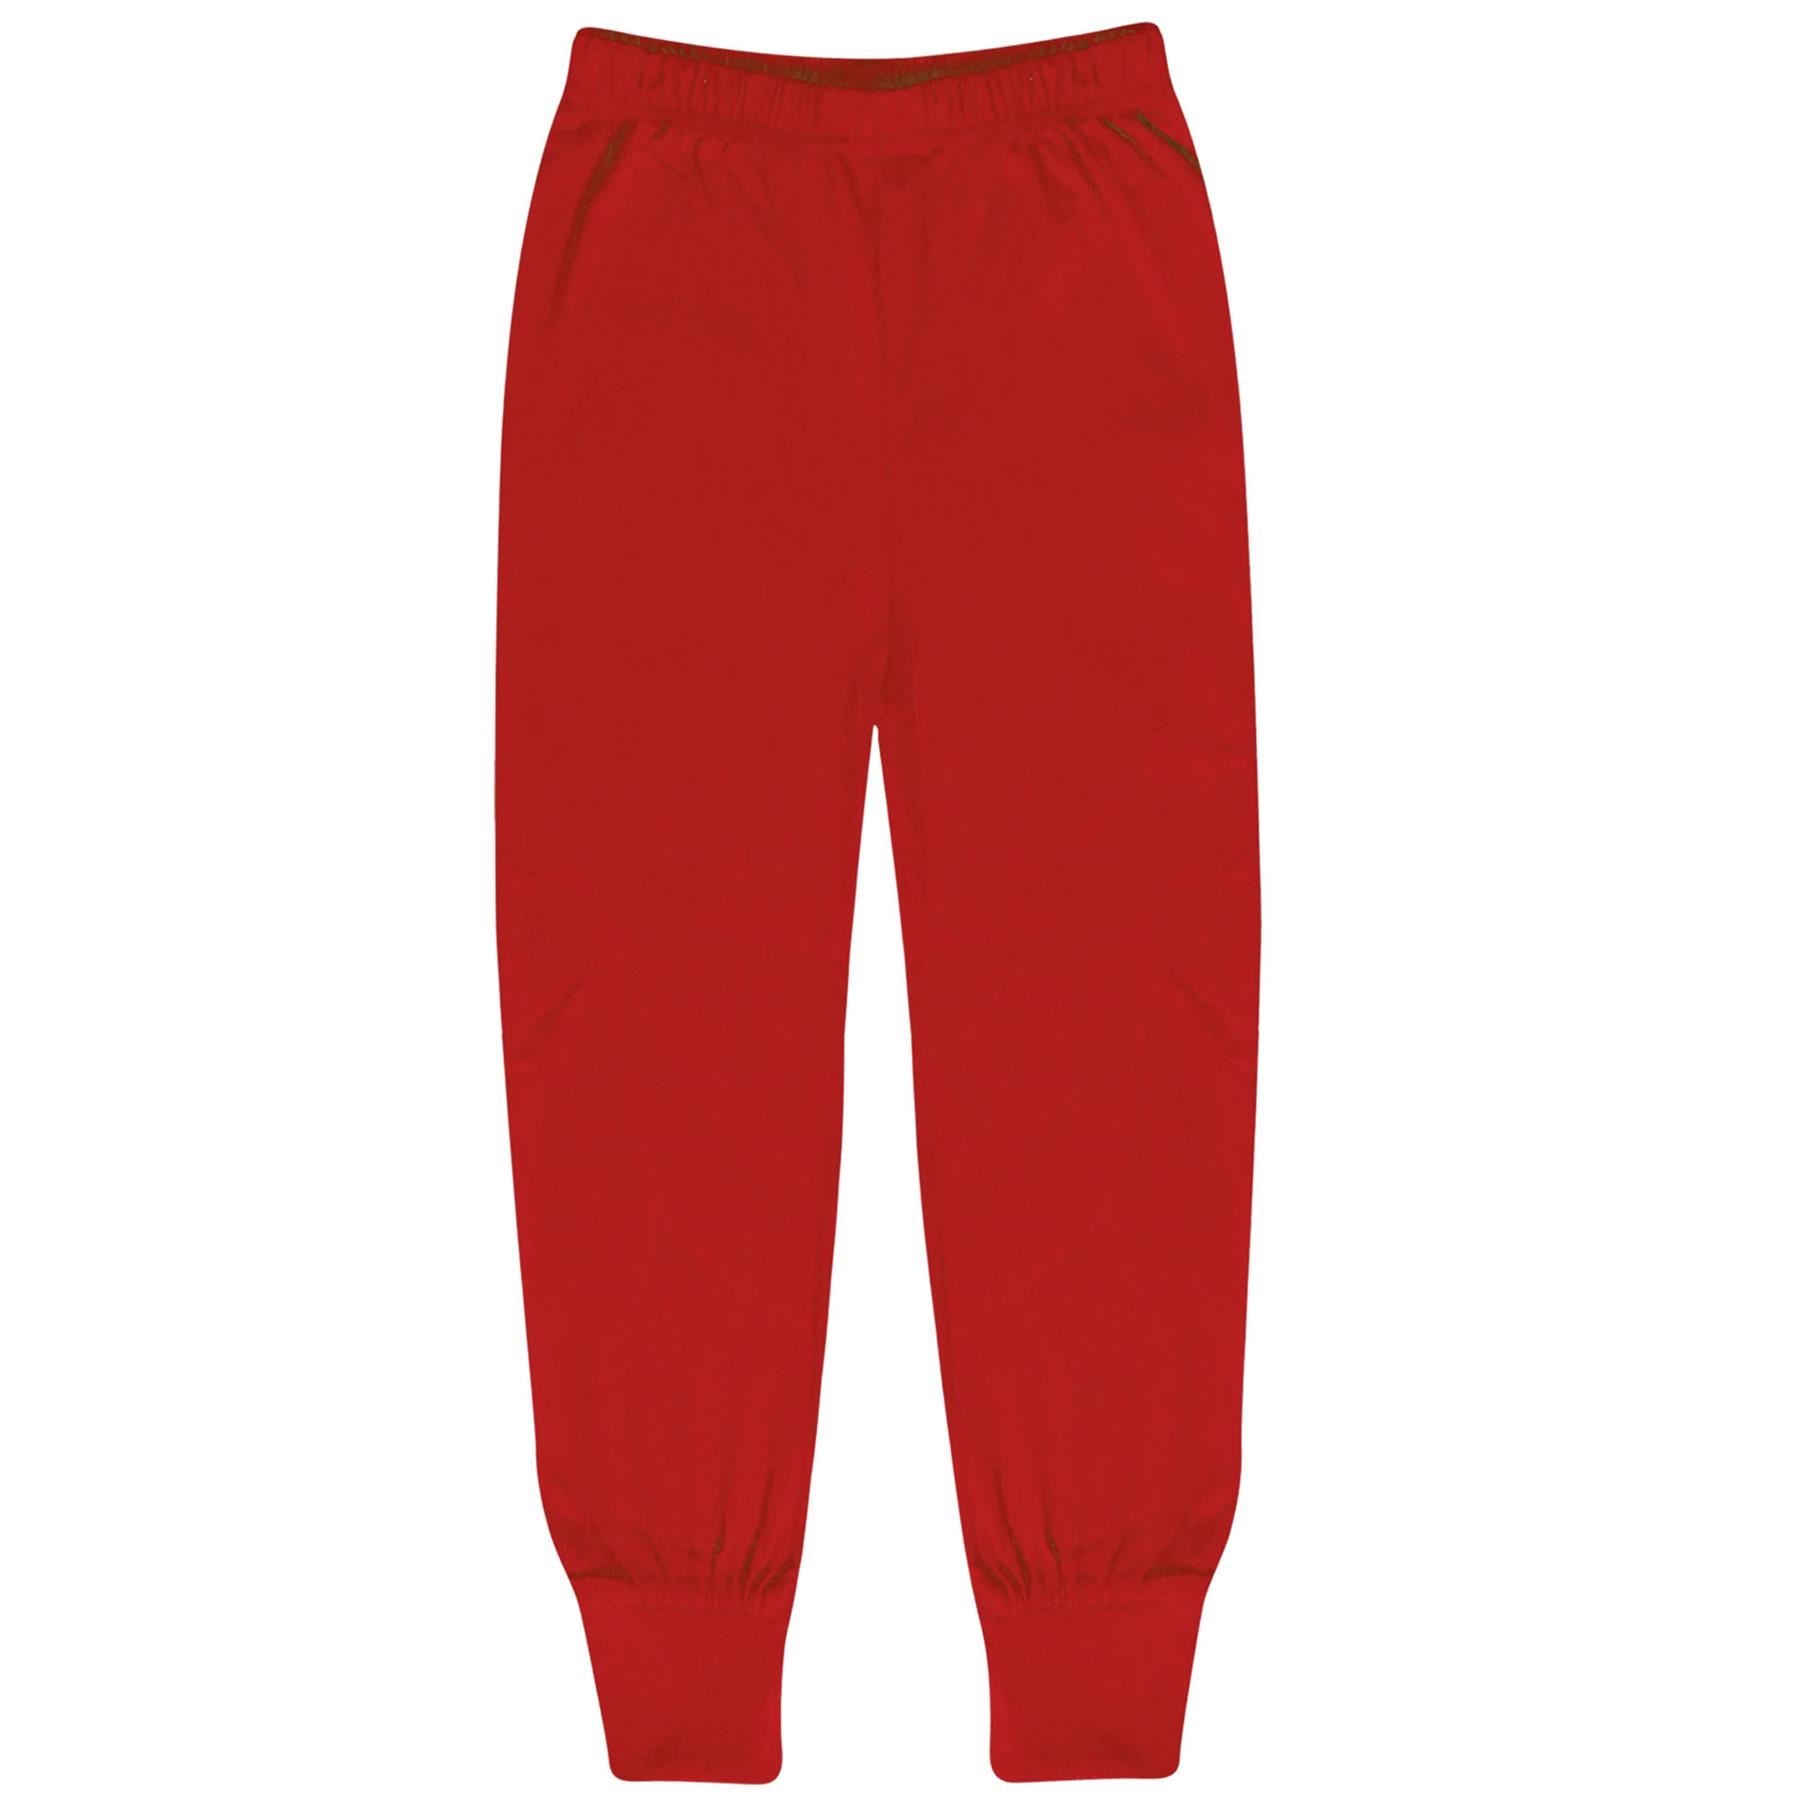 Kids Unisex Santa Floss Print Red Pyjamas Set